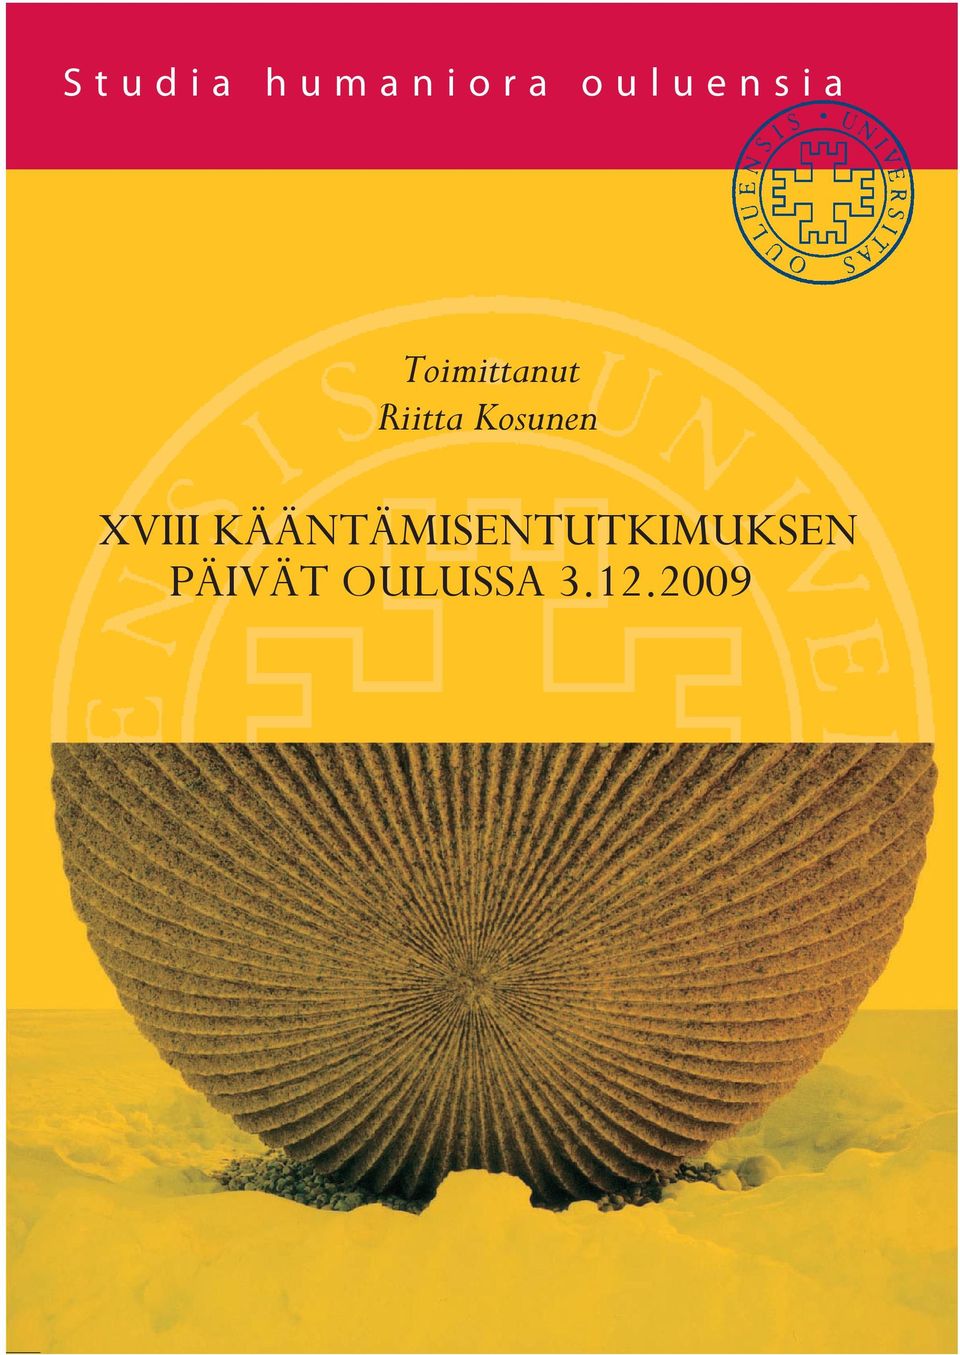 ) ISBN 978-951-42-9335-1 ISSN 1796-4725 Studia humaniora ouluensia K A N SI R A I